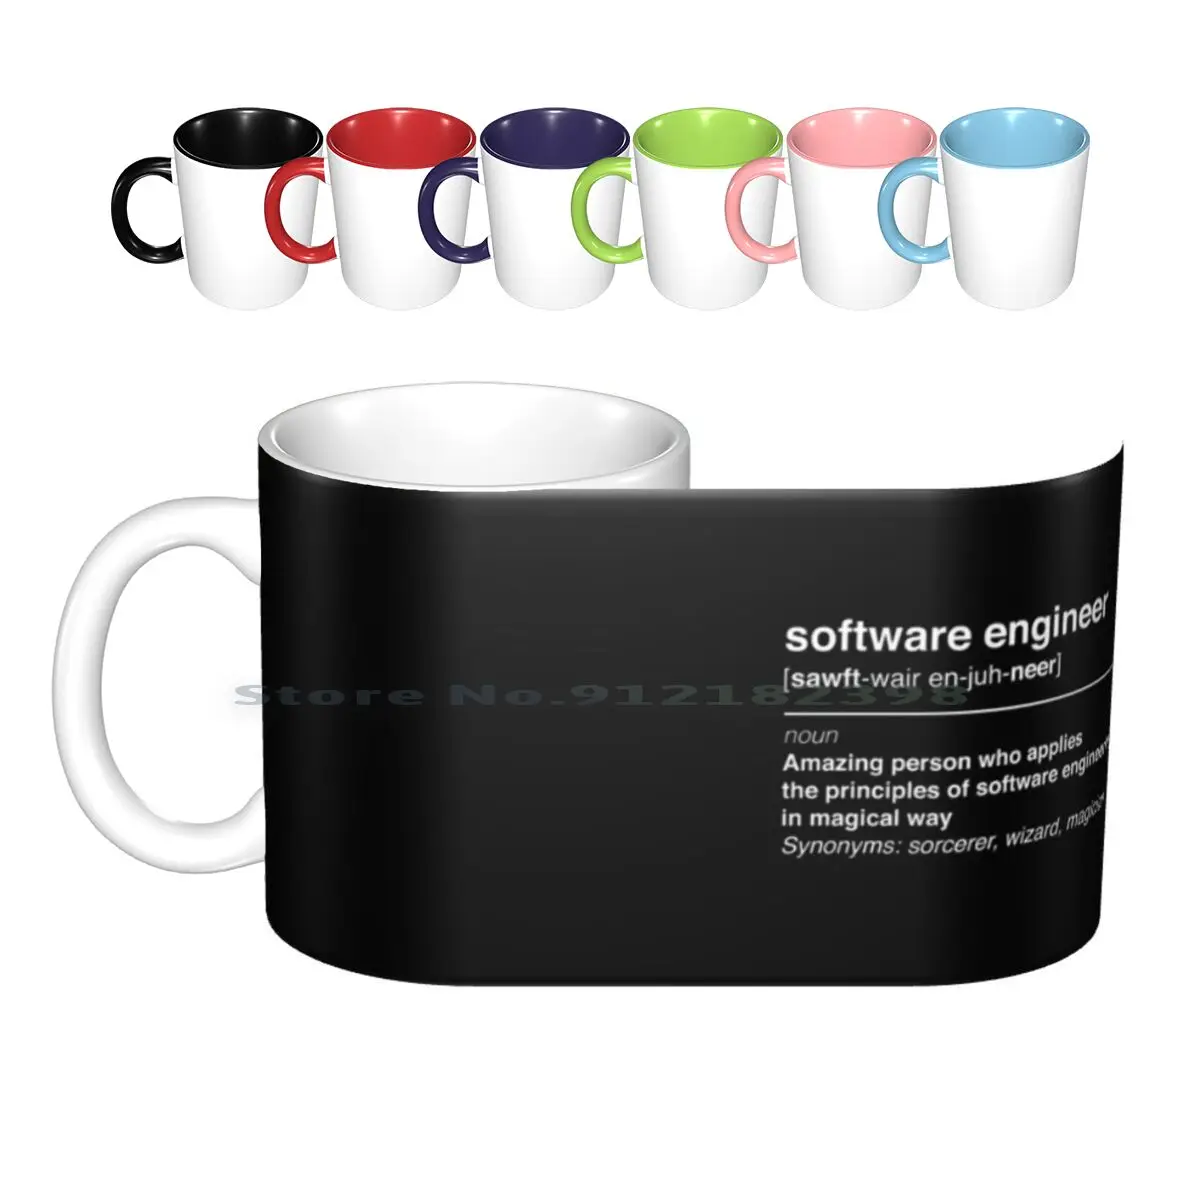 

Software Engineer Ceramic Mugs Coffee Cups Milk Tea Mug Geeks Geek Geeky Nerd Nerds Nerdy It Computer Tech Technology Coding